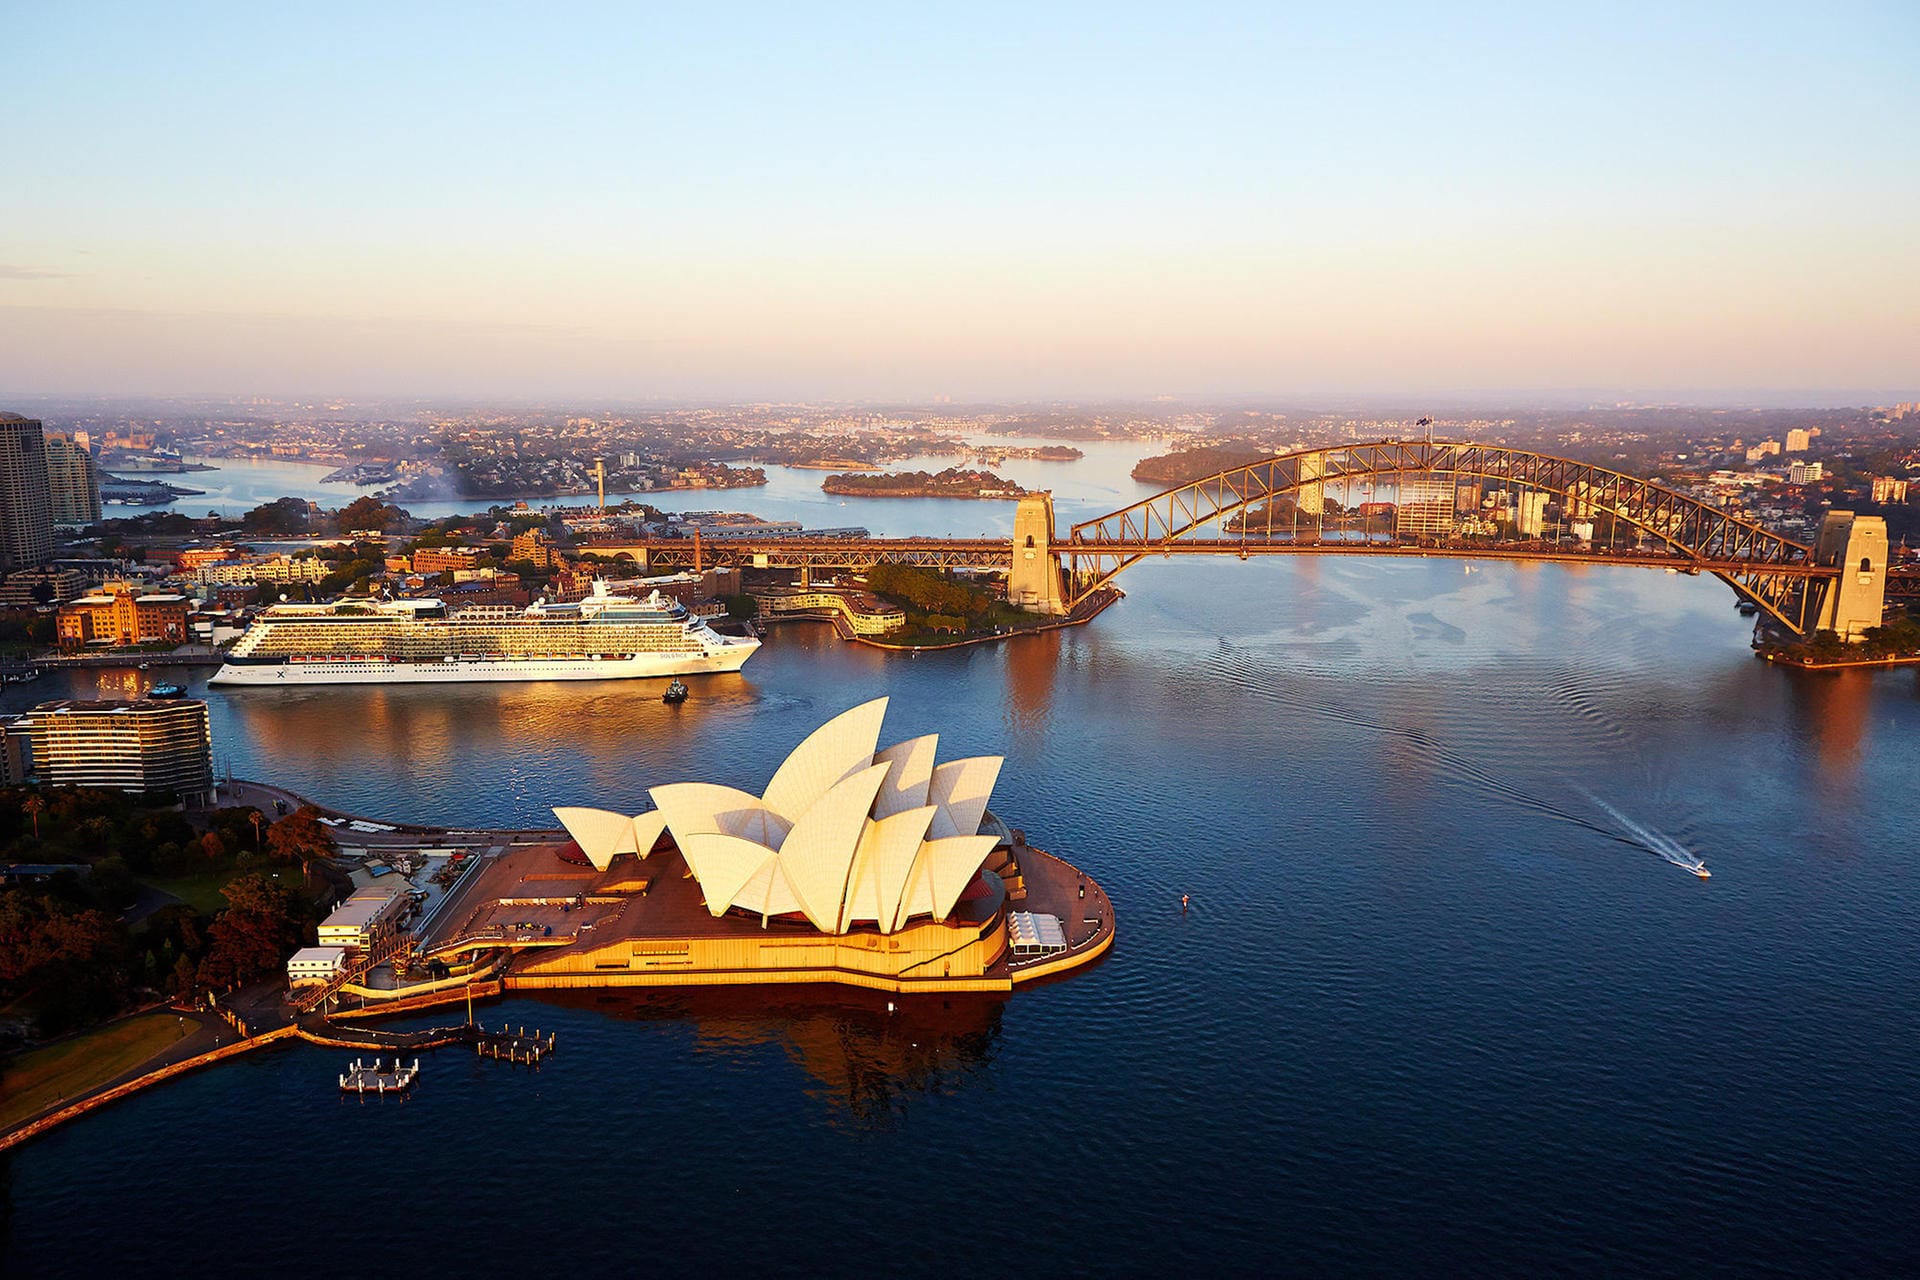 Sydney hat mit Port Jackson einen der schönsten Naturhäfen der Welt. Buchten, Strände und Wasserwege geben der Hafeneinfahrt ihren einzigartigen Charakter, Harbour Bridge und Opernhaus ziehen alle Blicke auf sich.